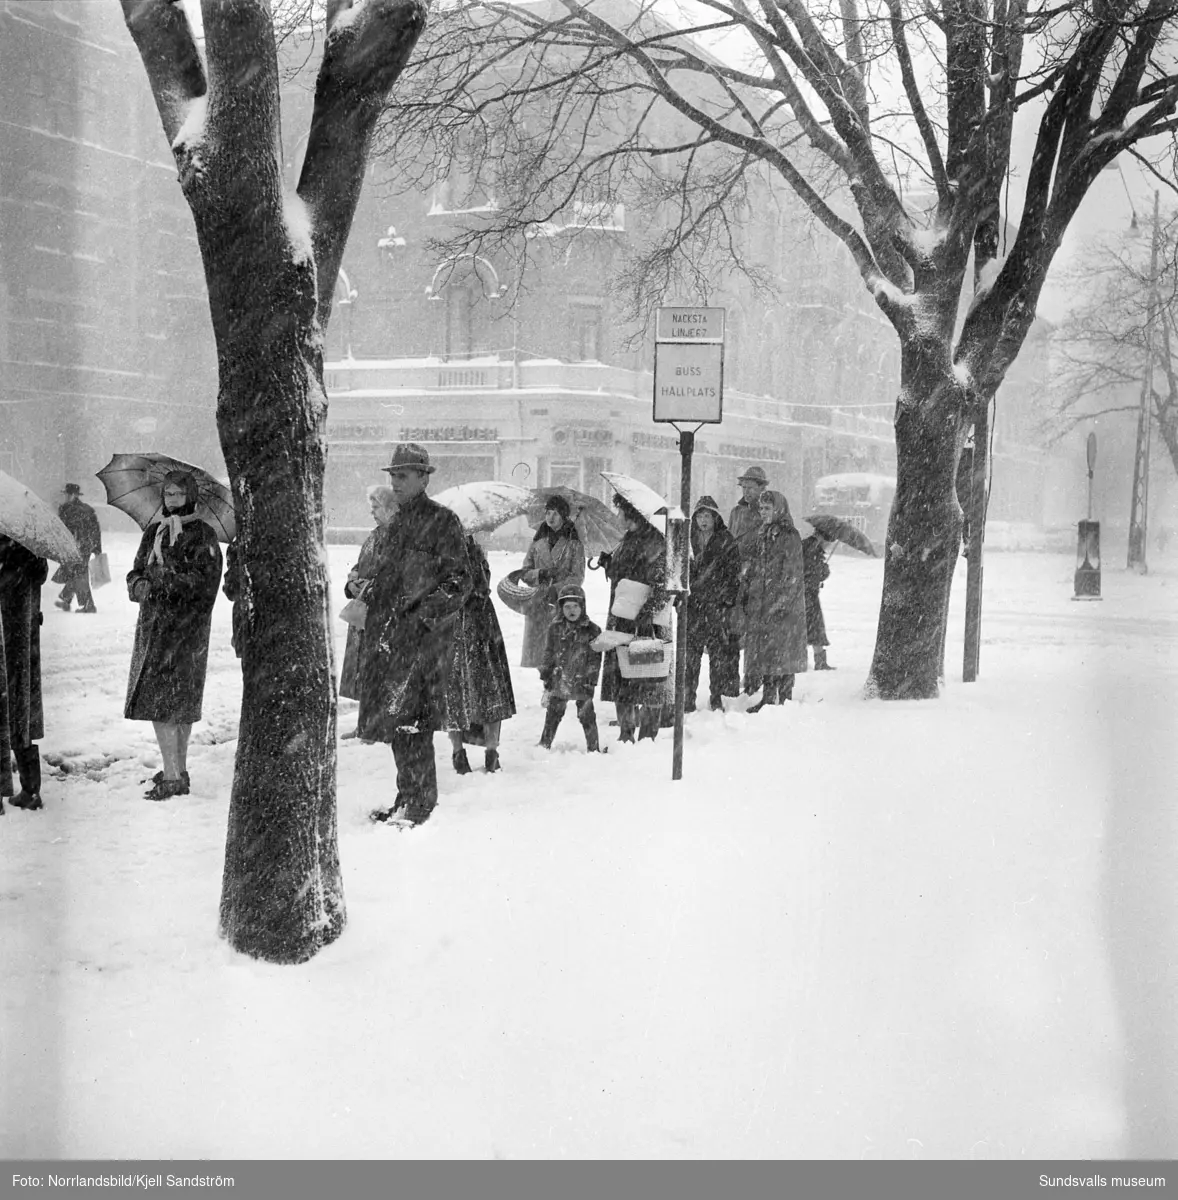 Kraftiga snöfall ställer till det i trafiken och inne i stan i början av april 1959.